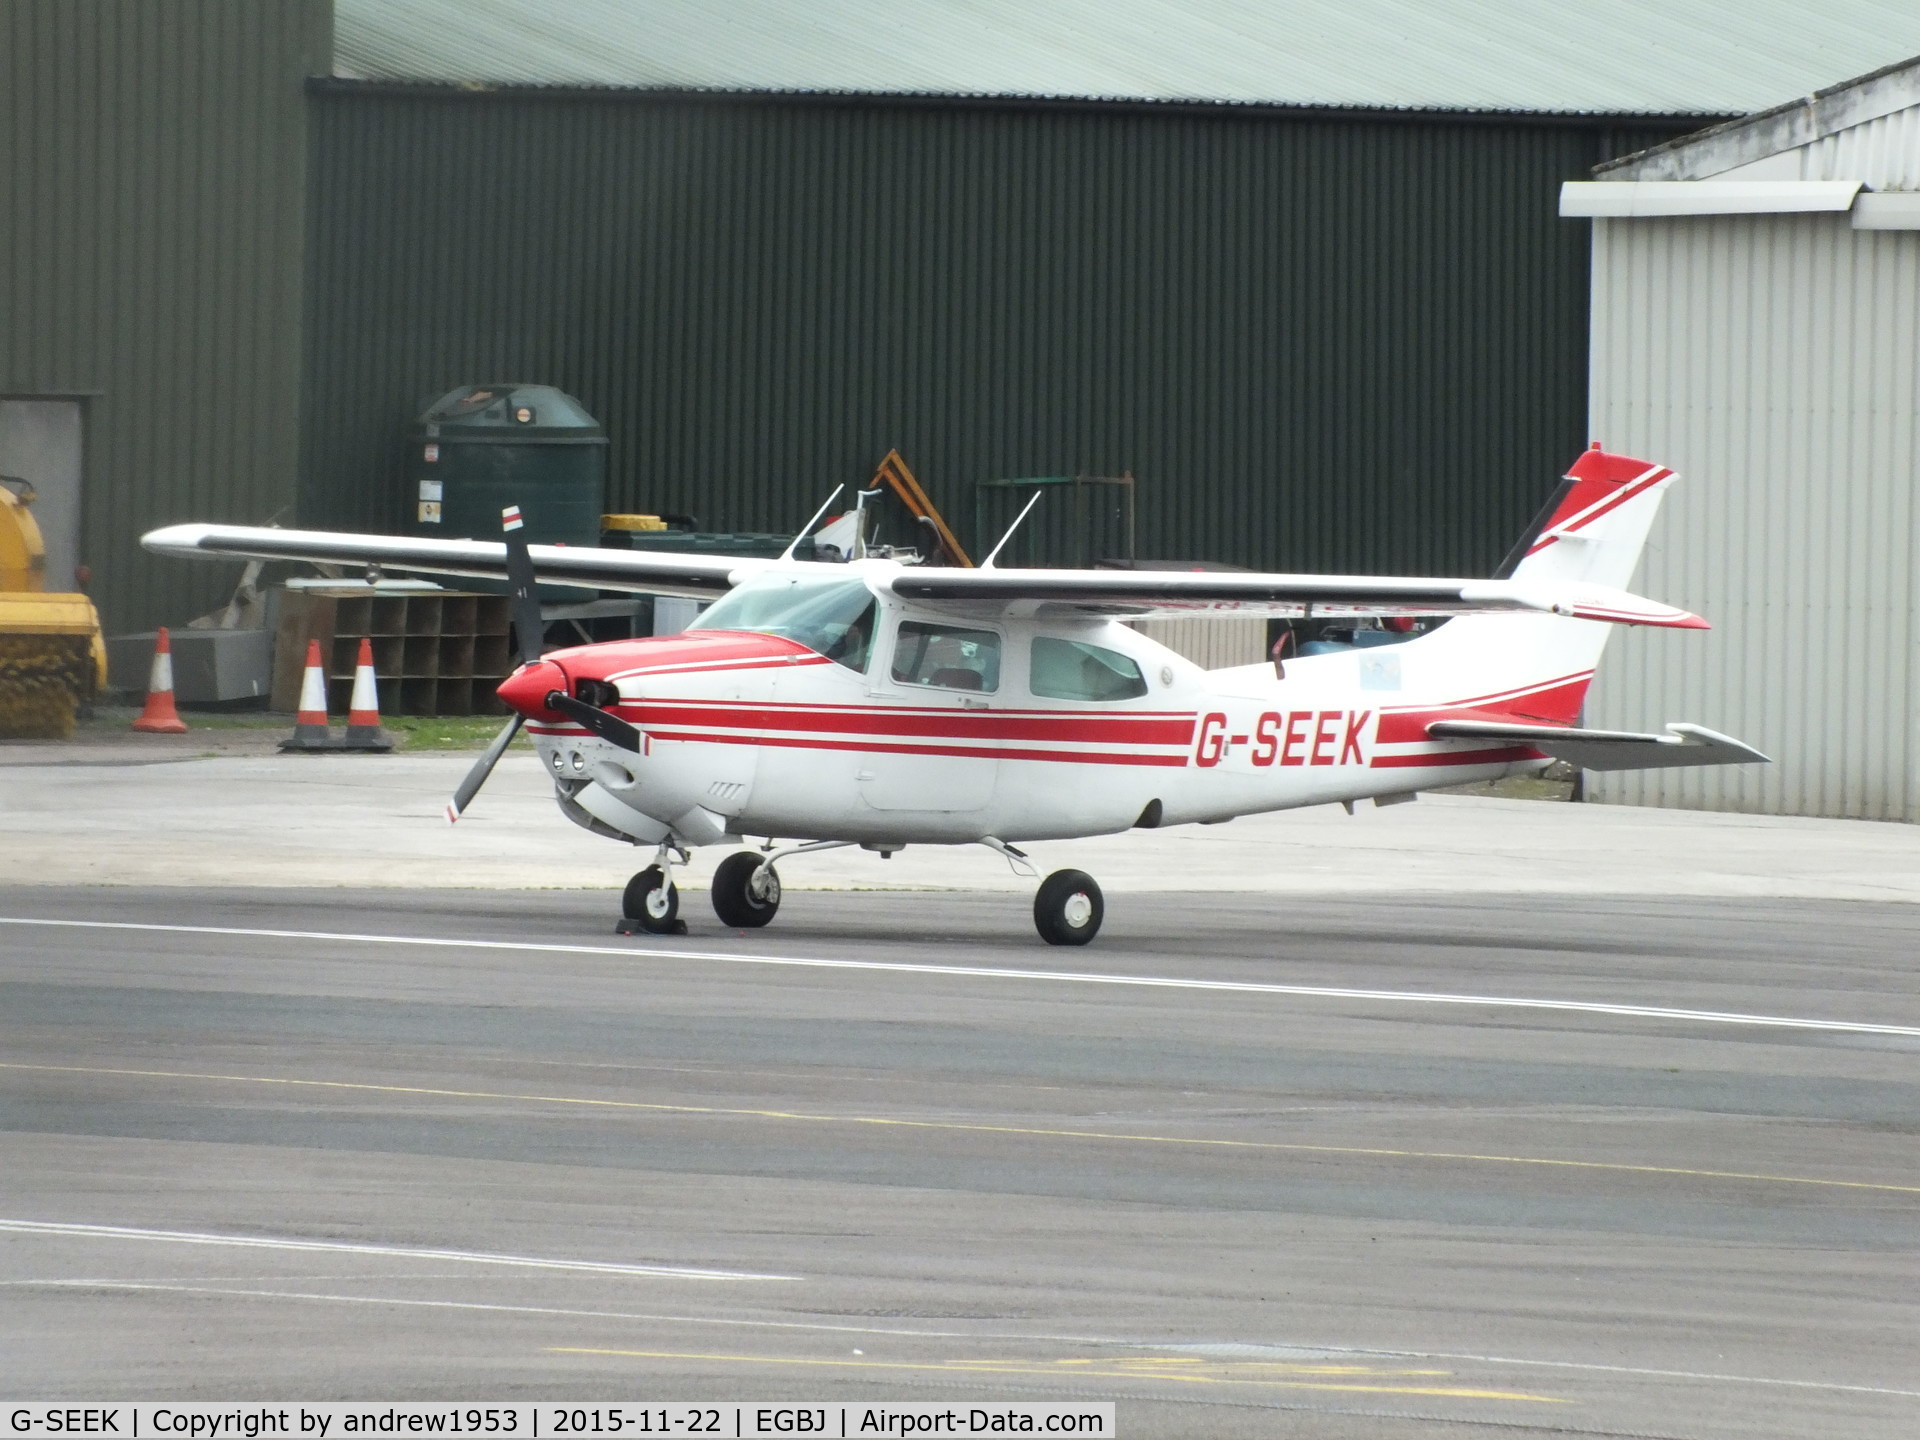 G-SEEK, 1982 Cessna T210N Turbo Centurion C/N 21064579, G-SEEK at Gloucestershire Airport.